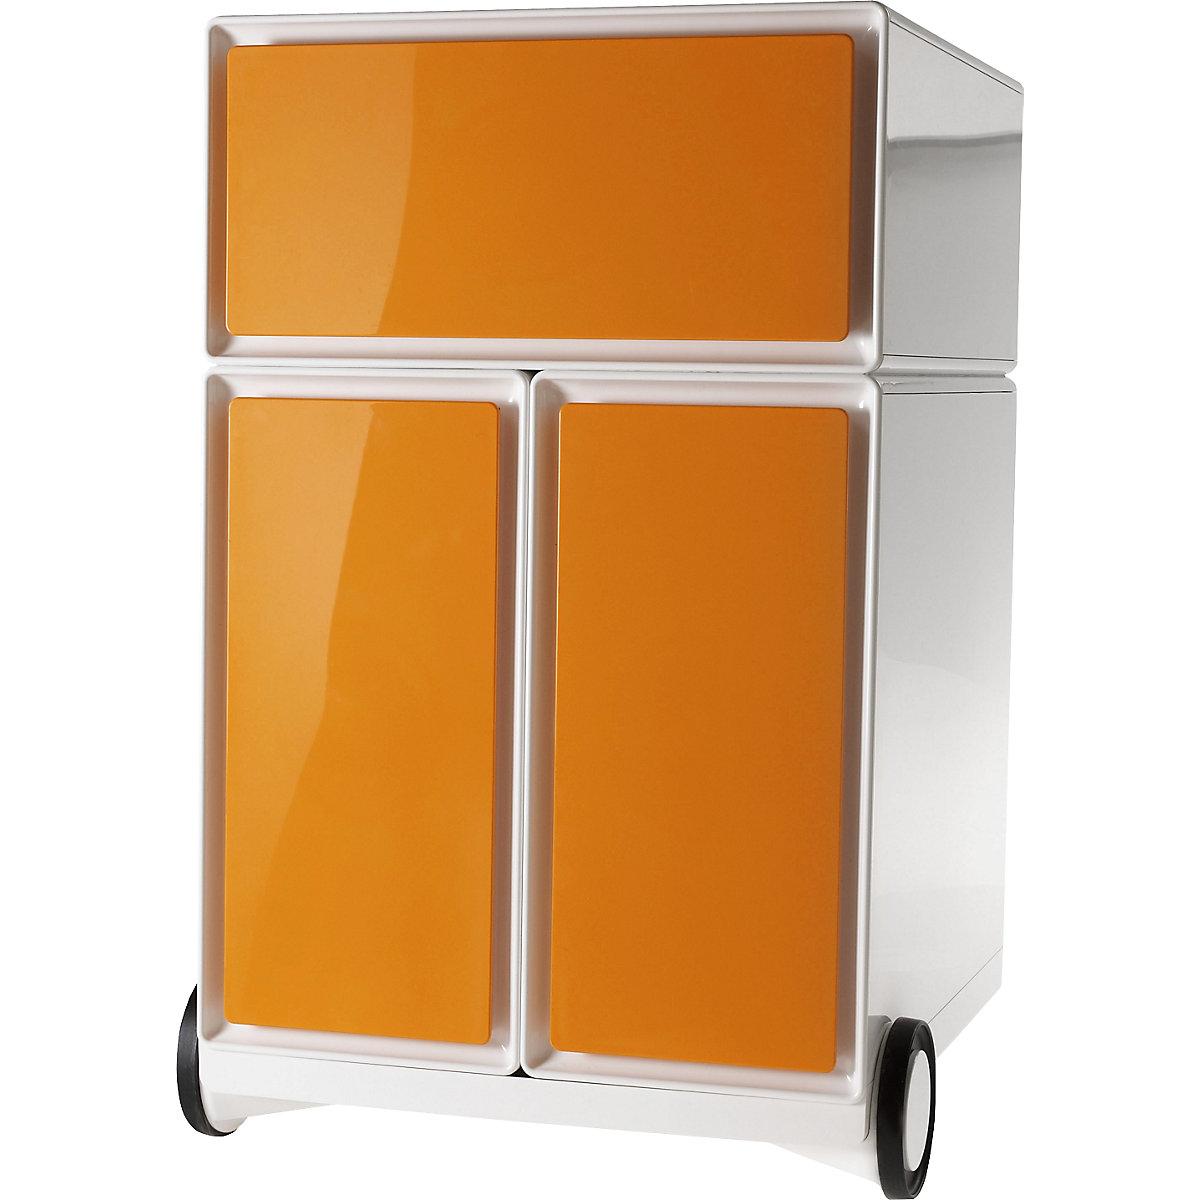 Pokretni ladičar easyBox® – Paperflow, 1 ladica, 2 ladice za viseće registratore, u bijeloj / narančastoj boji-15